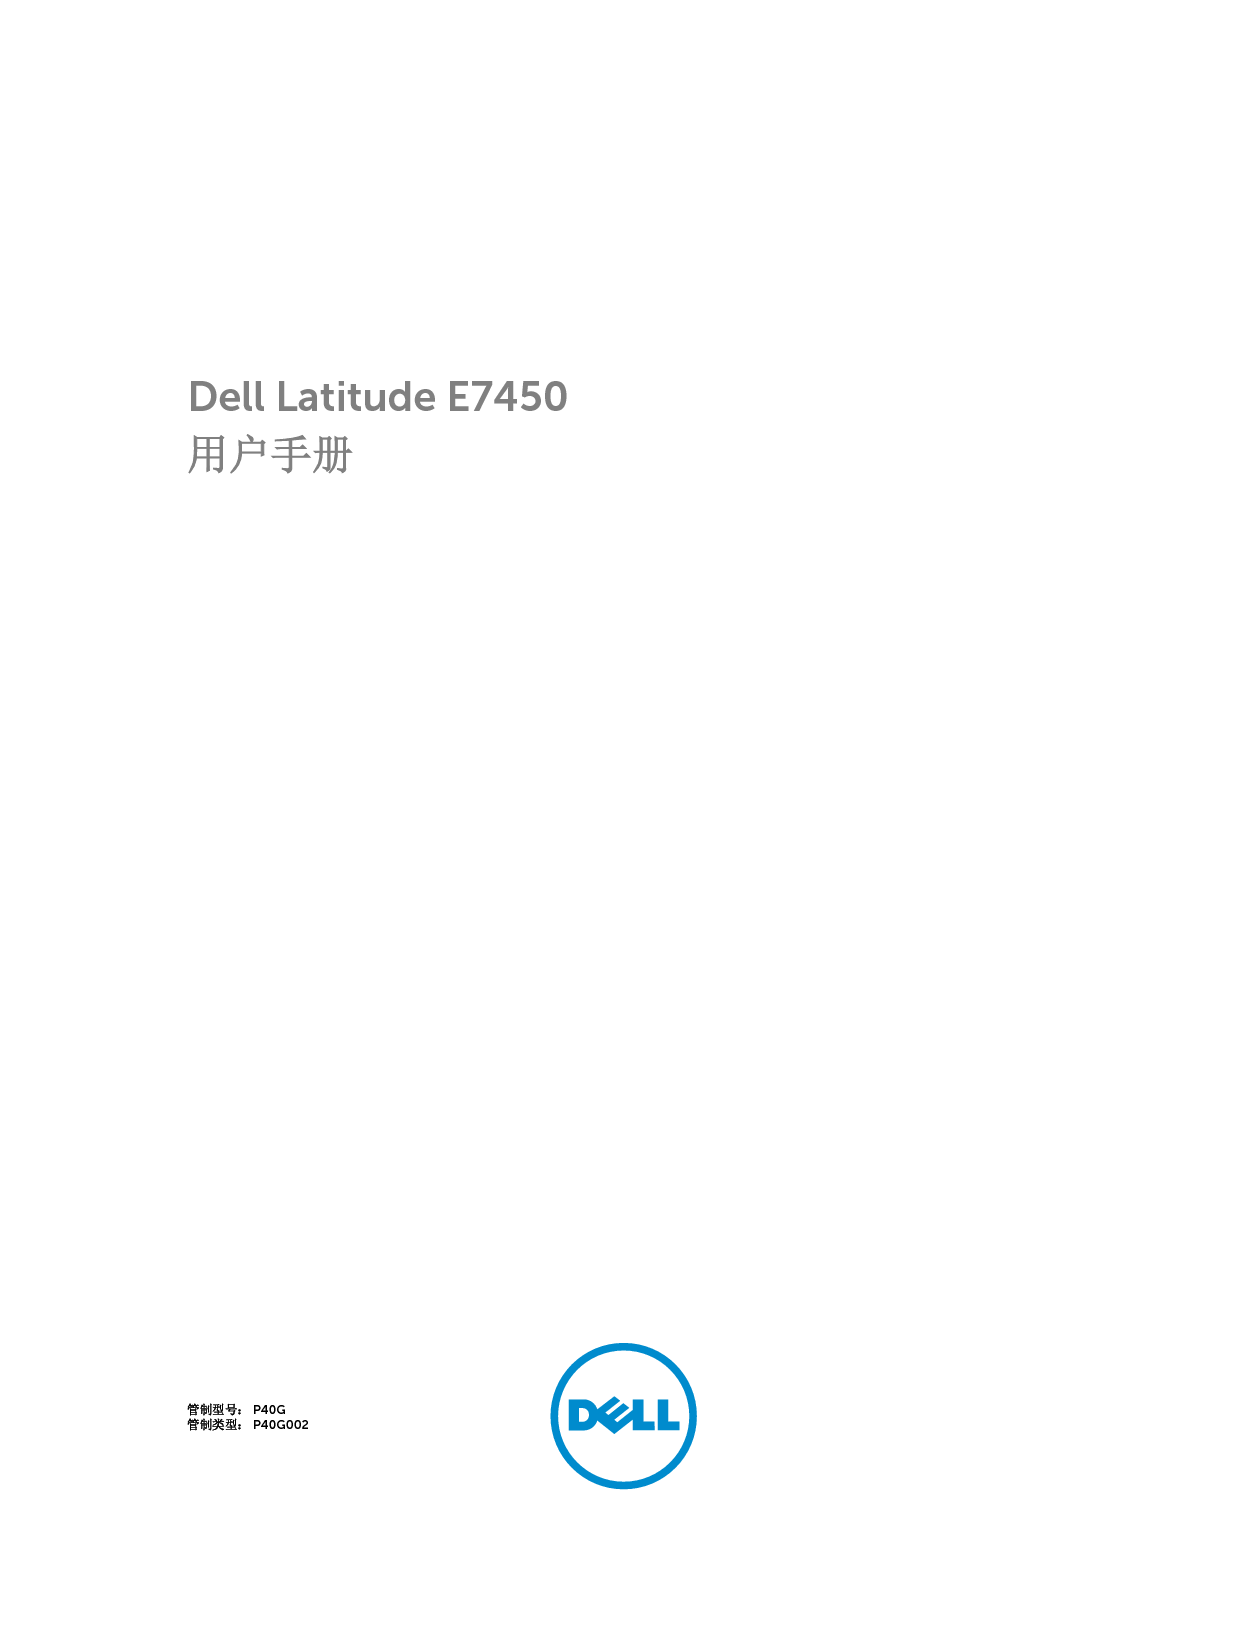 戴尔 Dell Latitude E7450 用户手册 封面